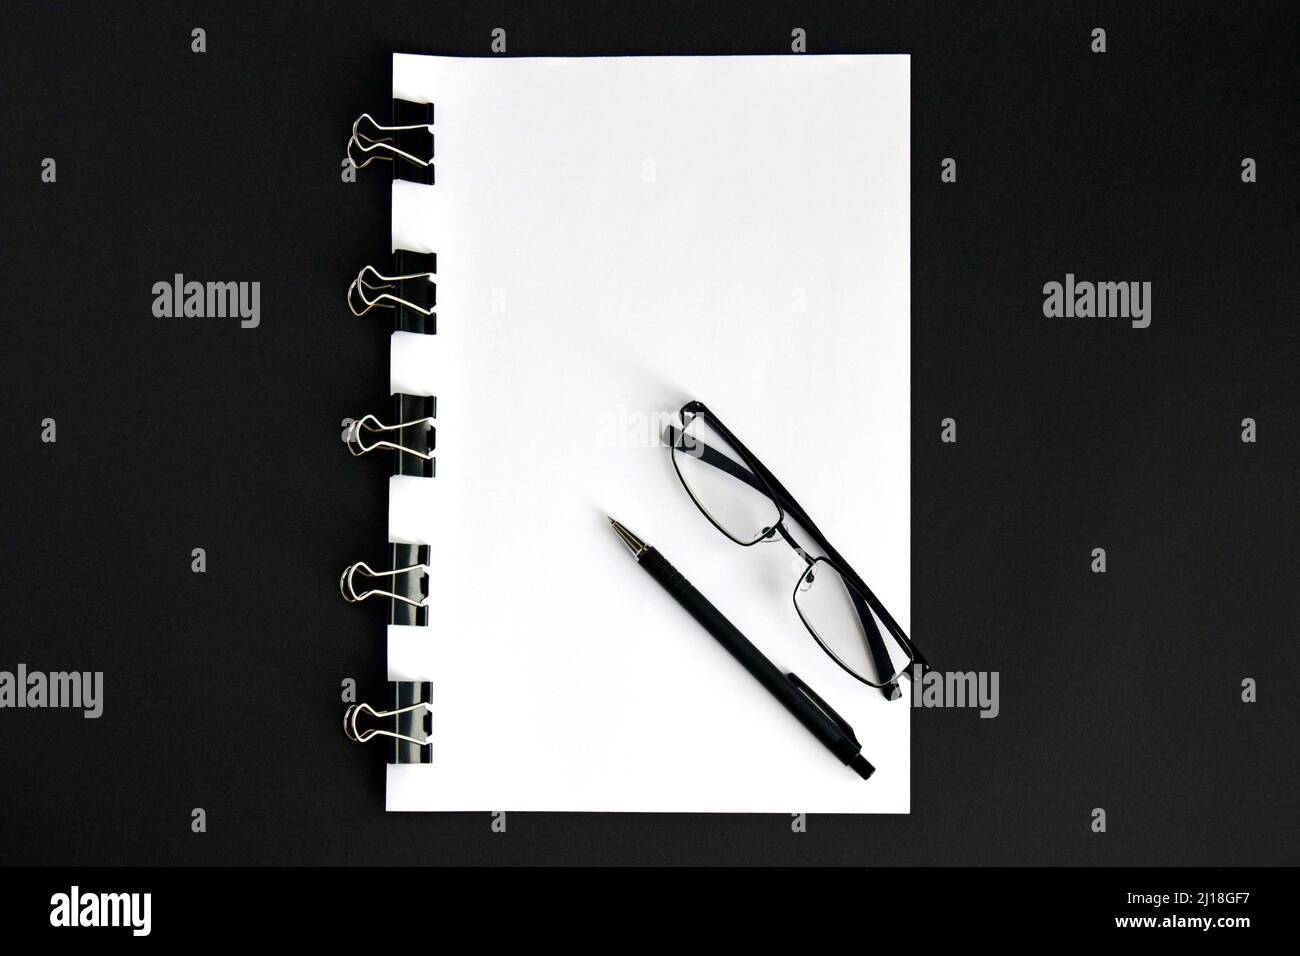 Feuilles blanches, stylo, lunettes et dispositif de reliure pour lier les feuilles de papier ensemble sur fond noir gros plan Banque D'Images